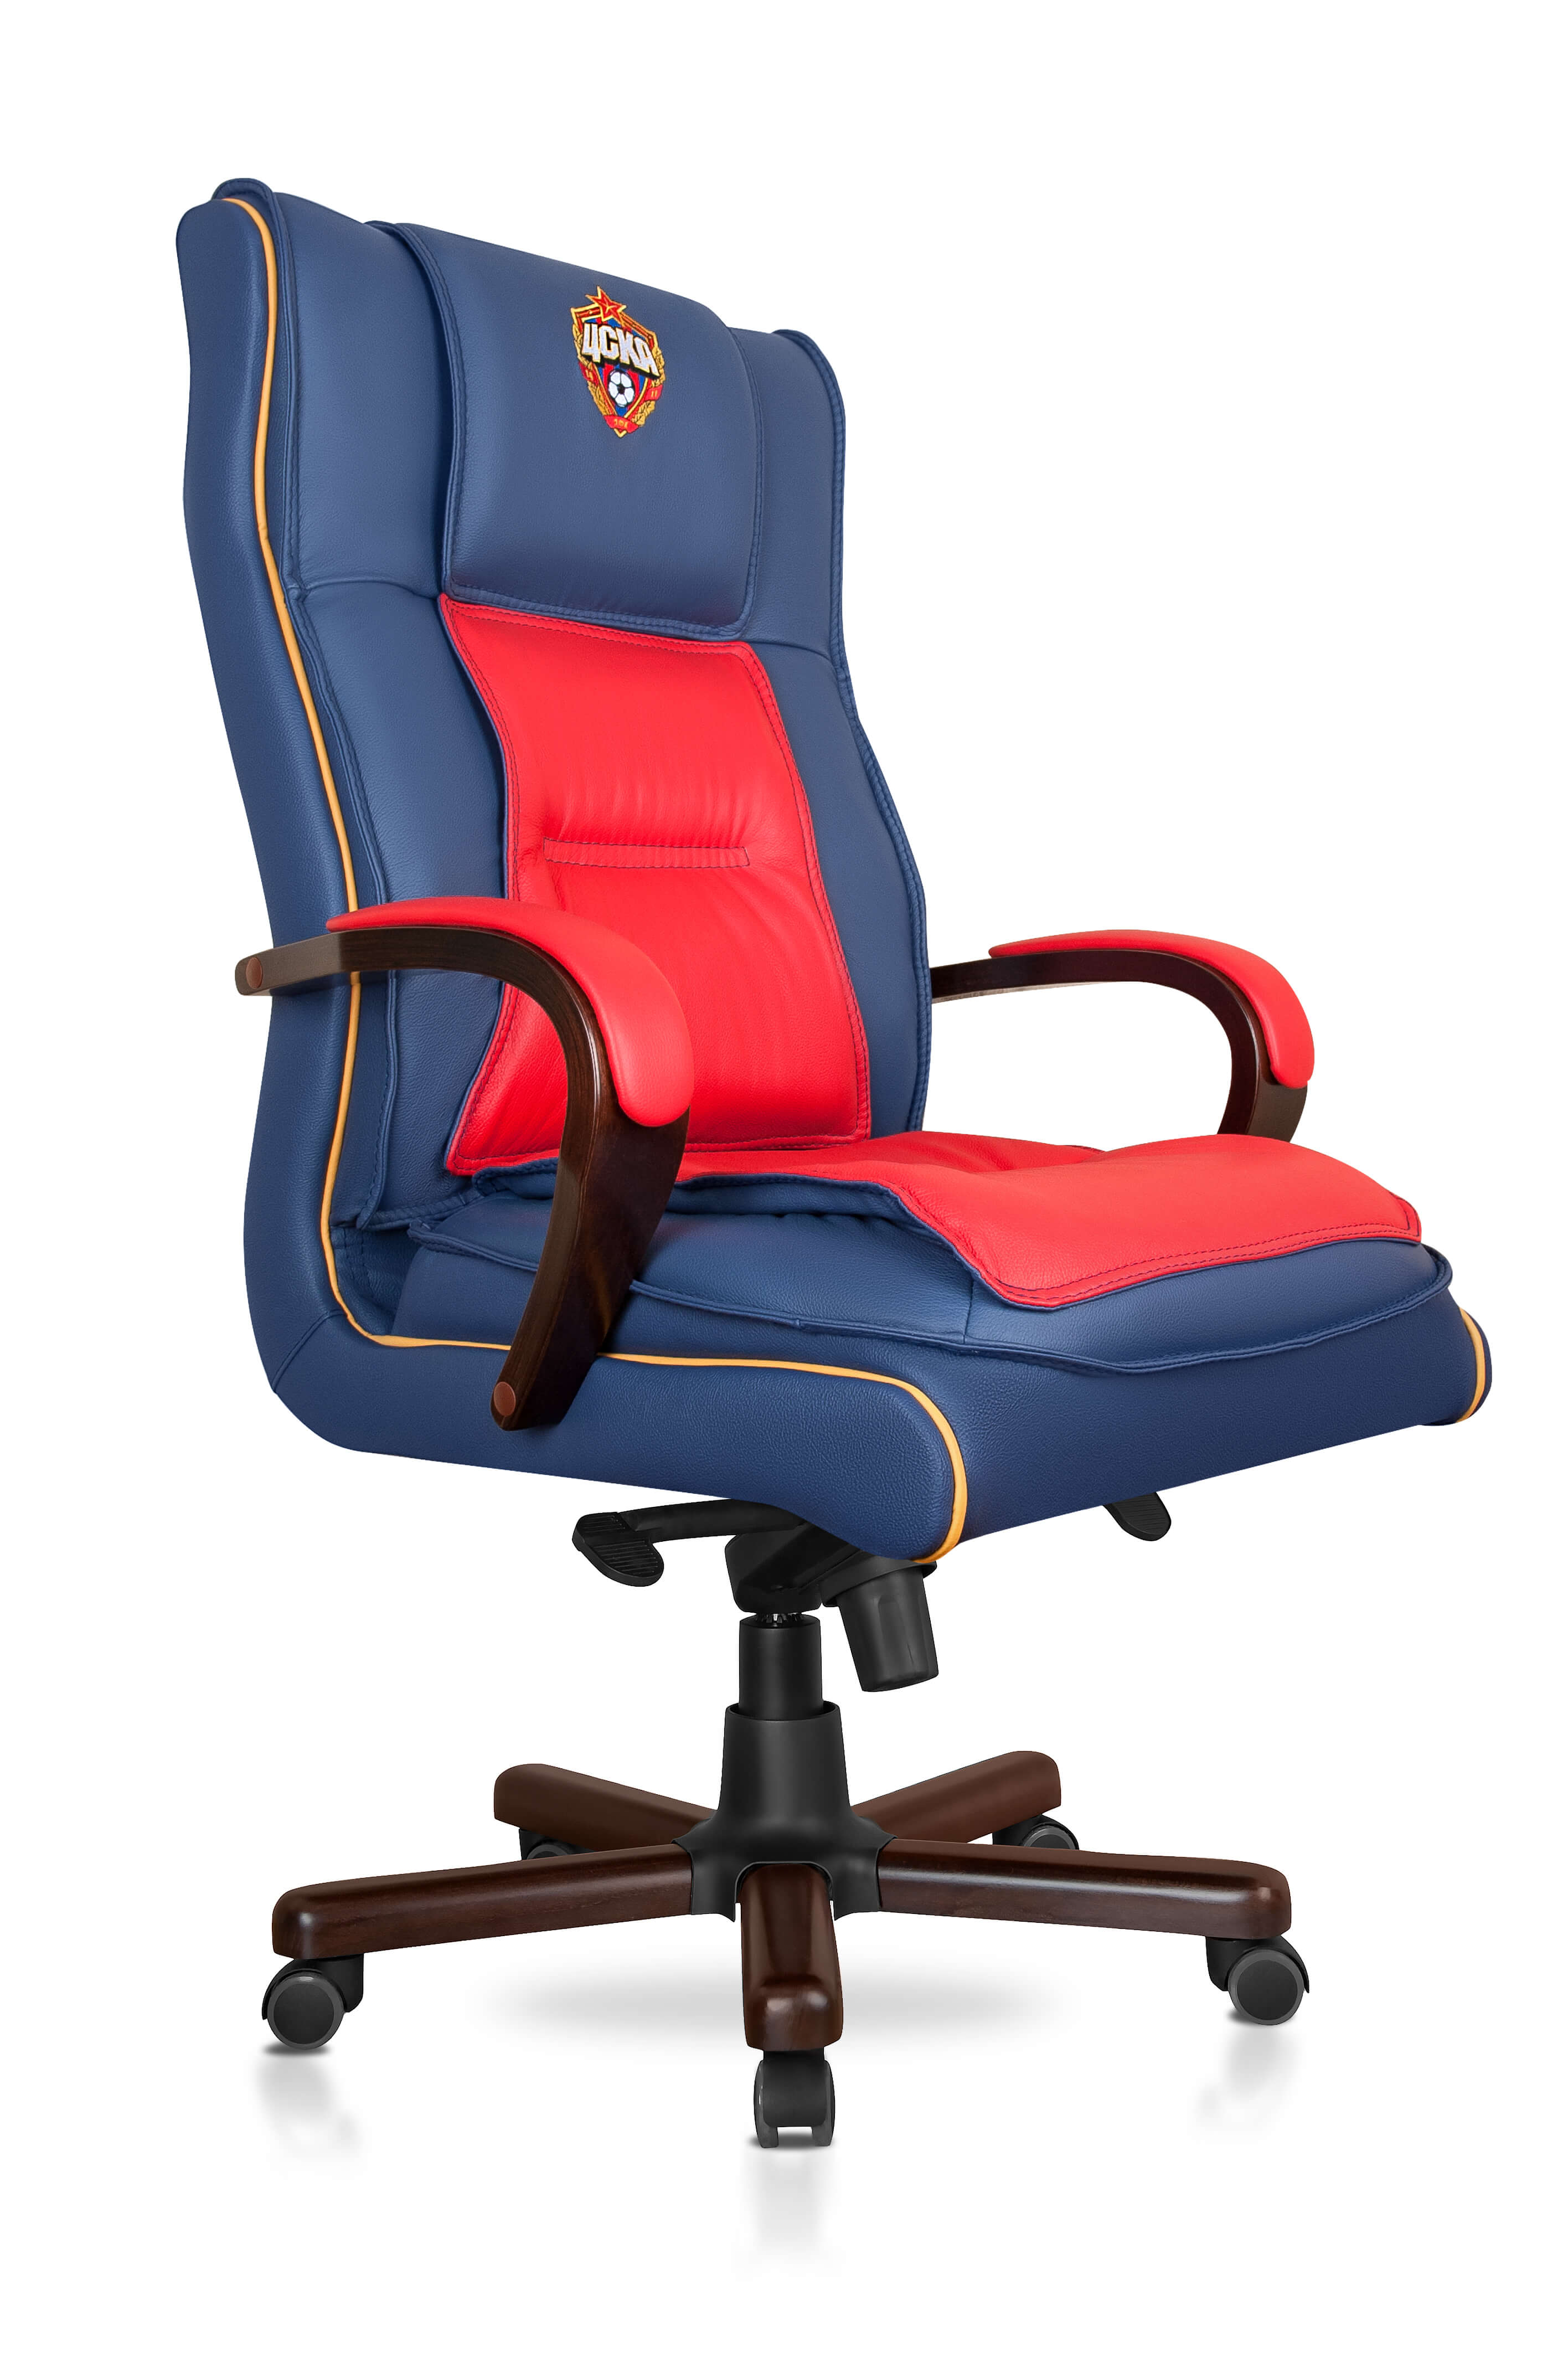 Кресло офисное красно-синее с эмблемой ПФК ЦСКА из натуральной кожи